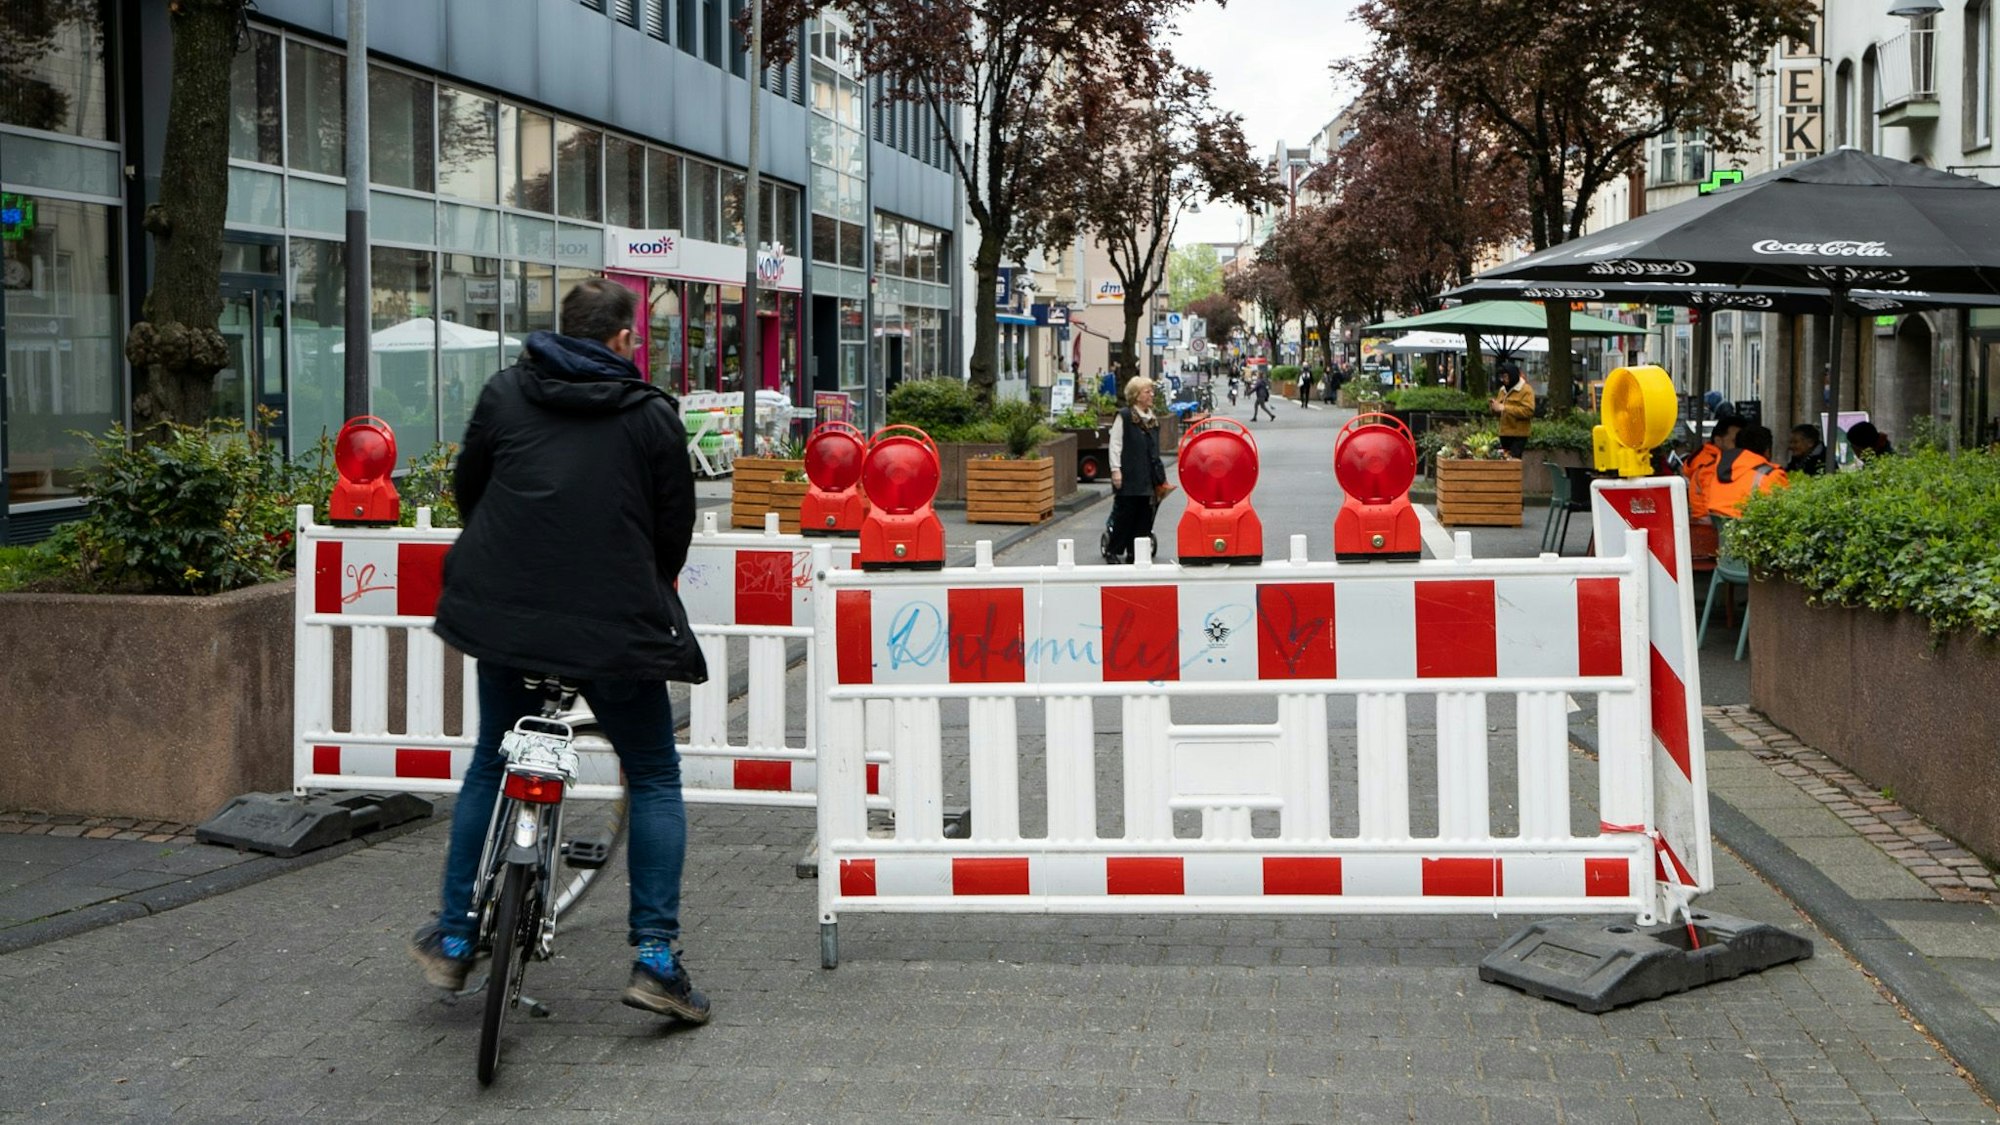 Neuerdings stellt die Stadt Absperrungen auf, um den Radverkehr auf der Deutzer Freiheit zu entschleunigen